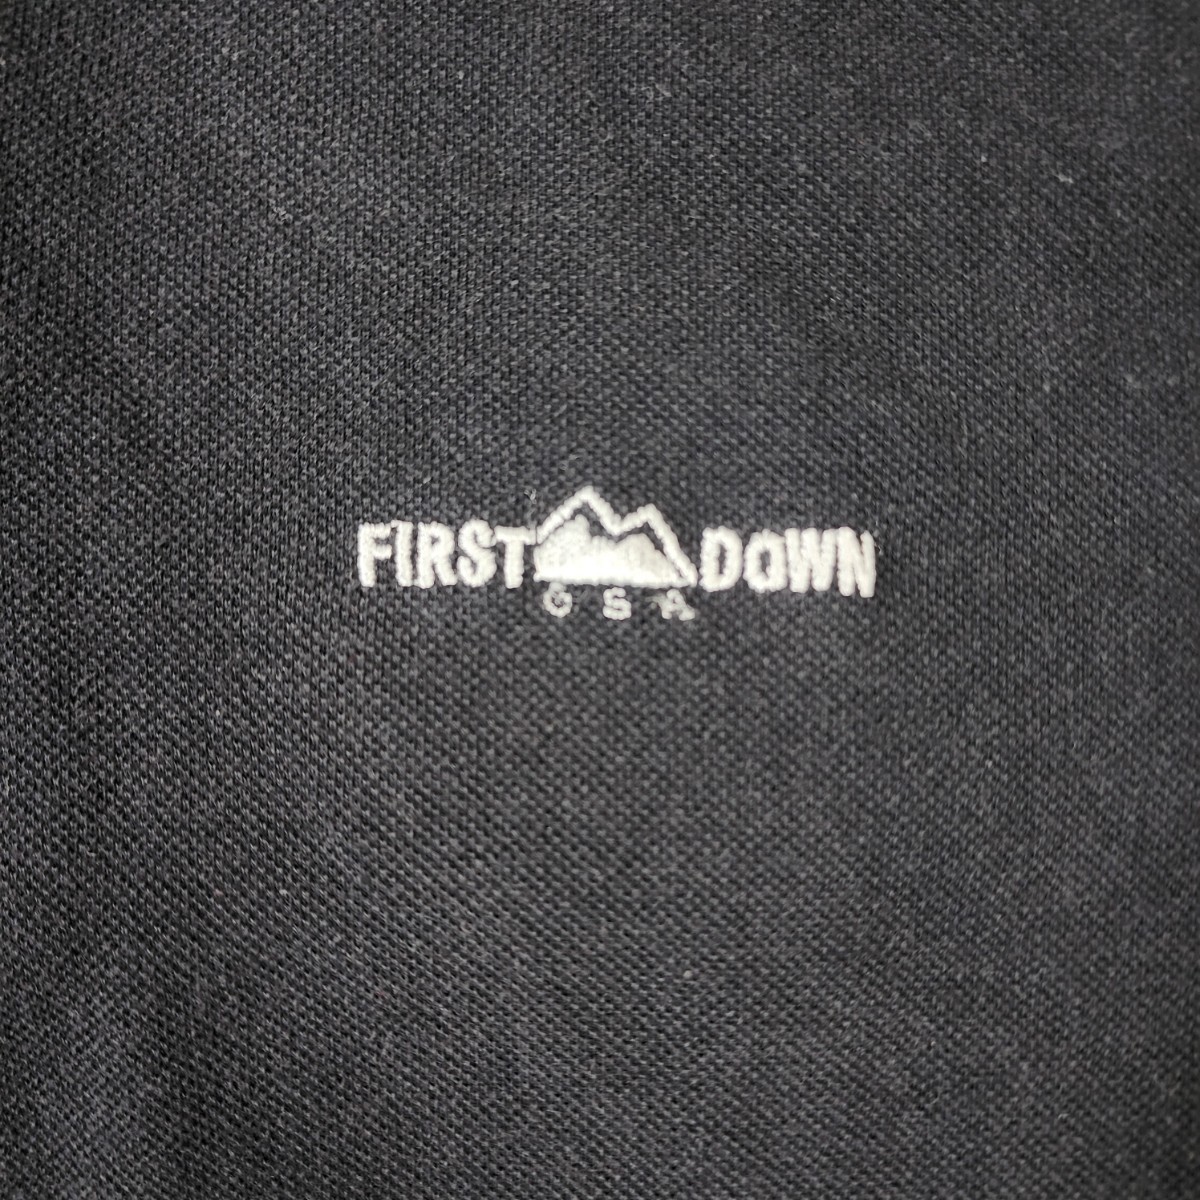 Y2 FIRST DOWN ファーストダウン メンズ ポロシャツ 半袖 2L 鹿の子編み ハーフジップ スポーツ アウトドア 刺ロゴ 大きめサイズ 黒_画像10